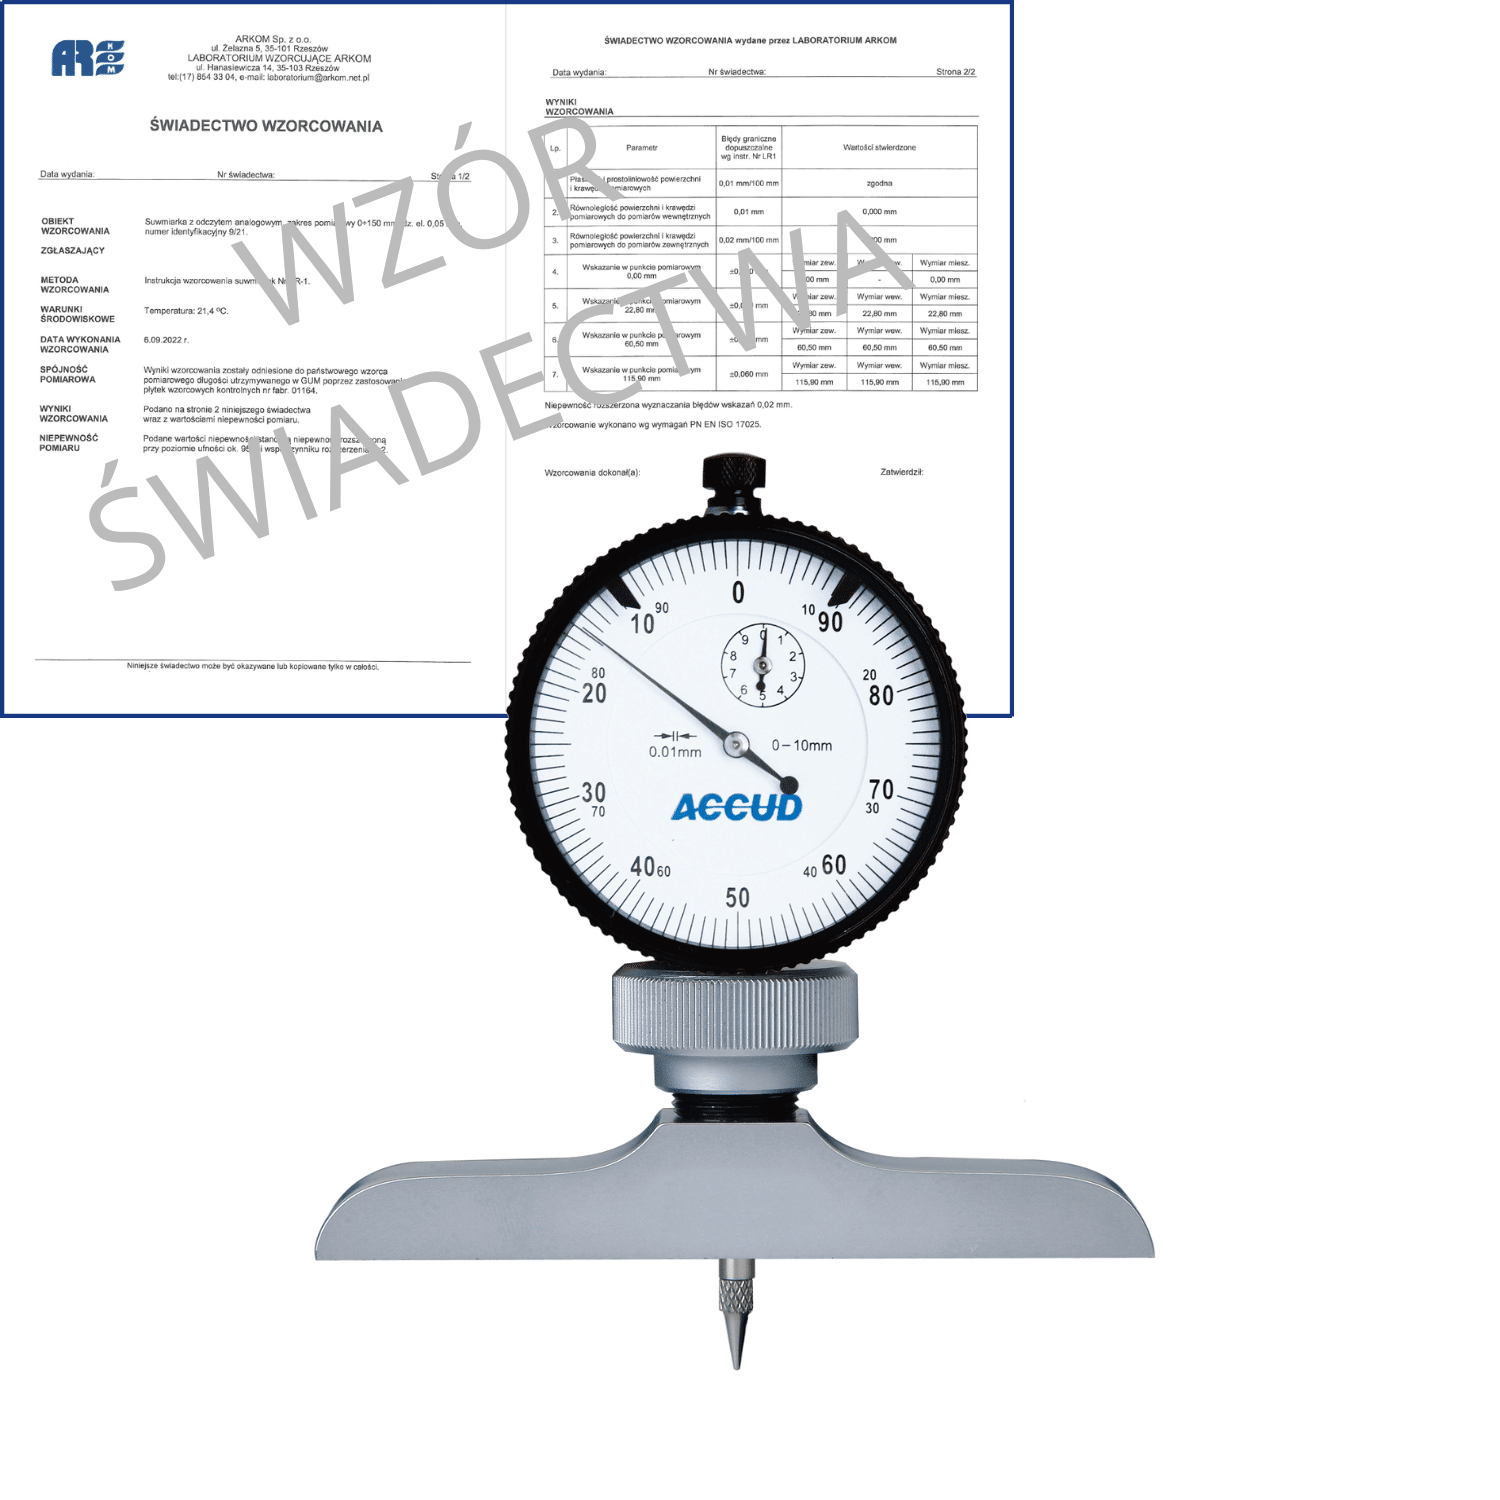 ACCUD głębokościomierz zegarowy 0-10/0.01mm  podstawa 101.5x17mm + świadectwo wzorcowania 291-010-12 WZORC